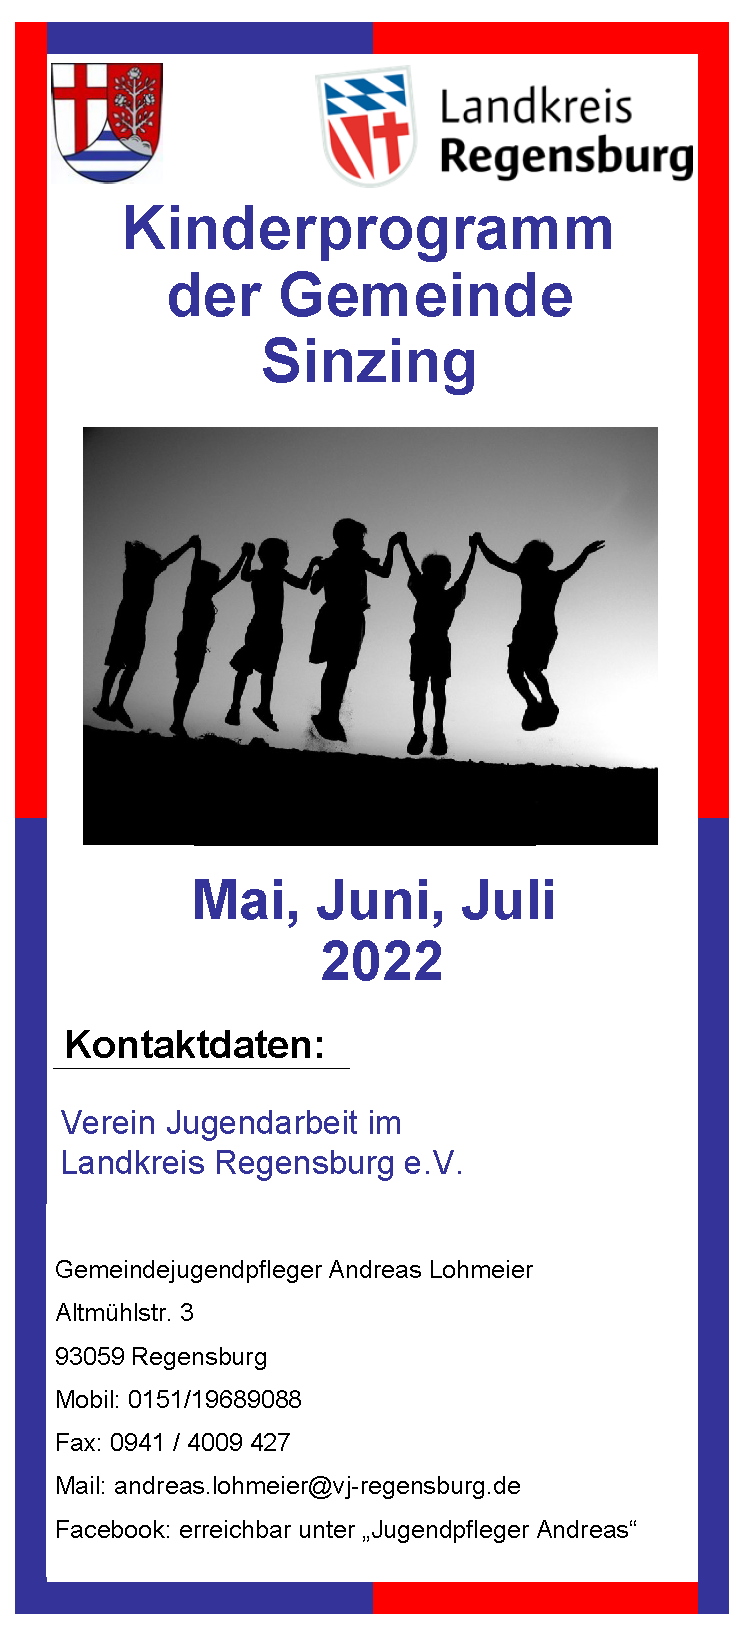 Kinderprogamm der Gemeinde Sinzing - Mai-Juni-Juli 2022